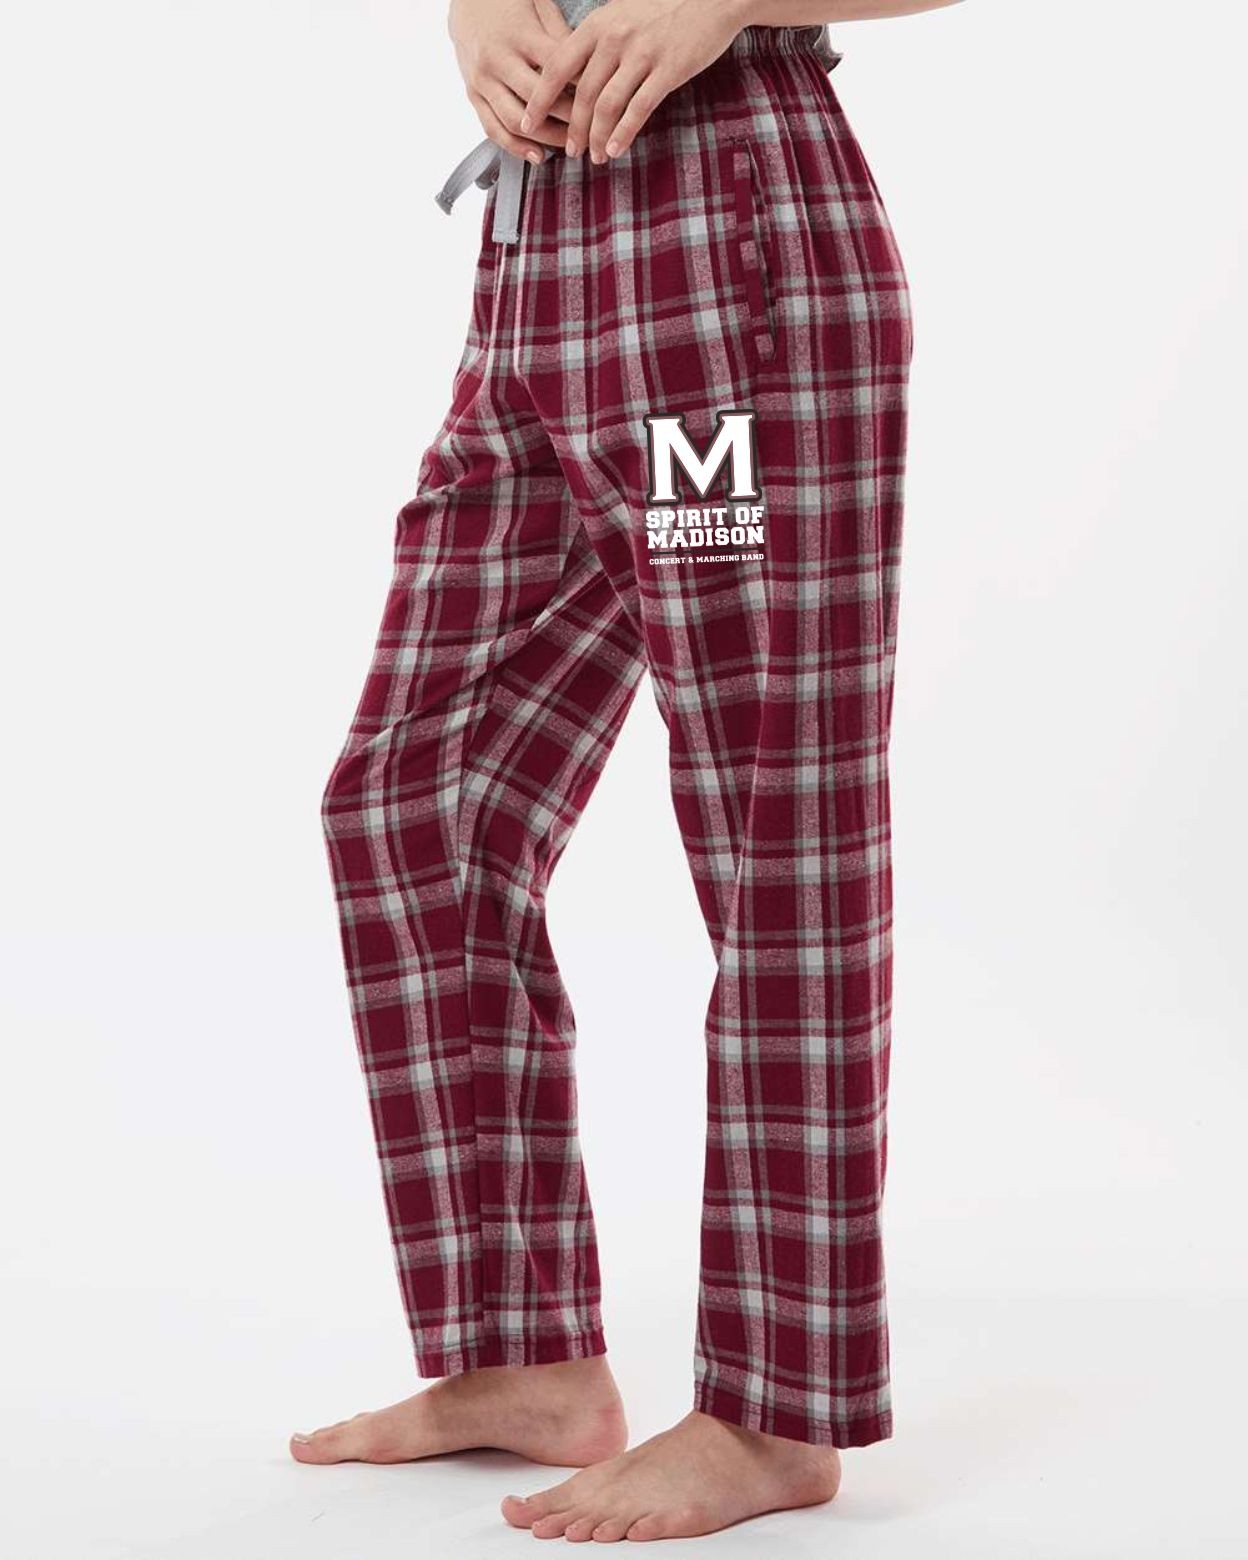 Ladies Spirit of Madison Pajama Pants - Heritage Maroon Plaid